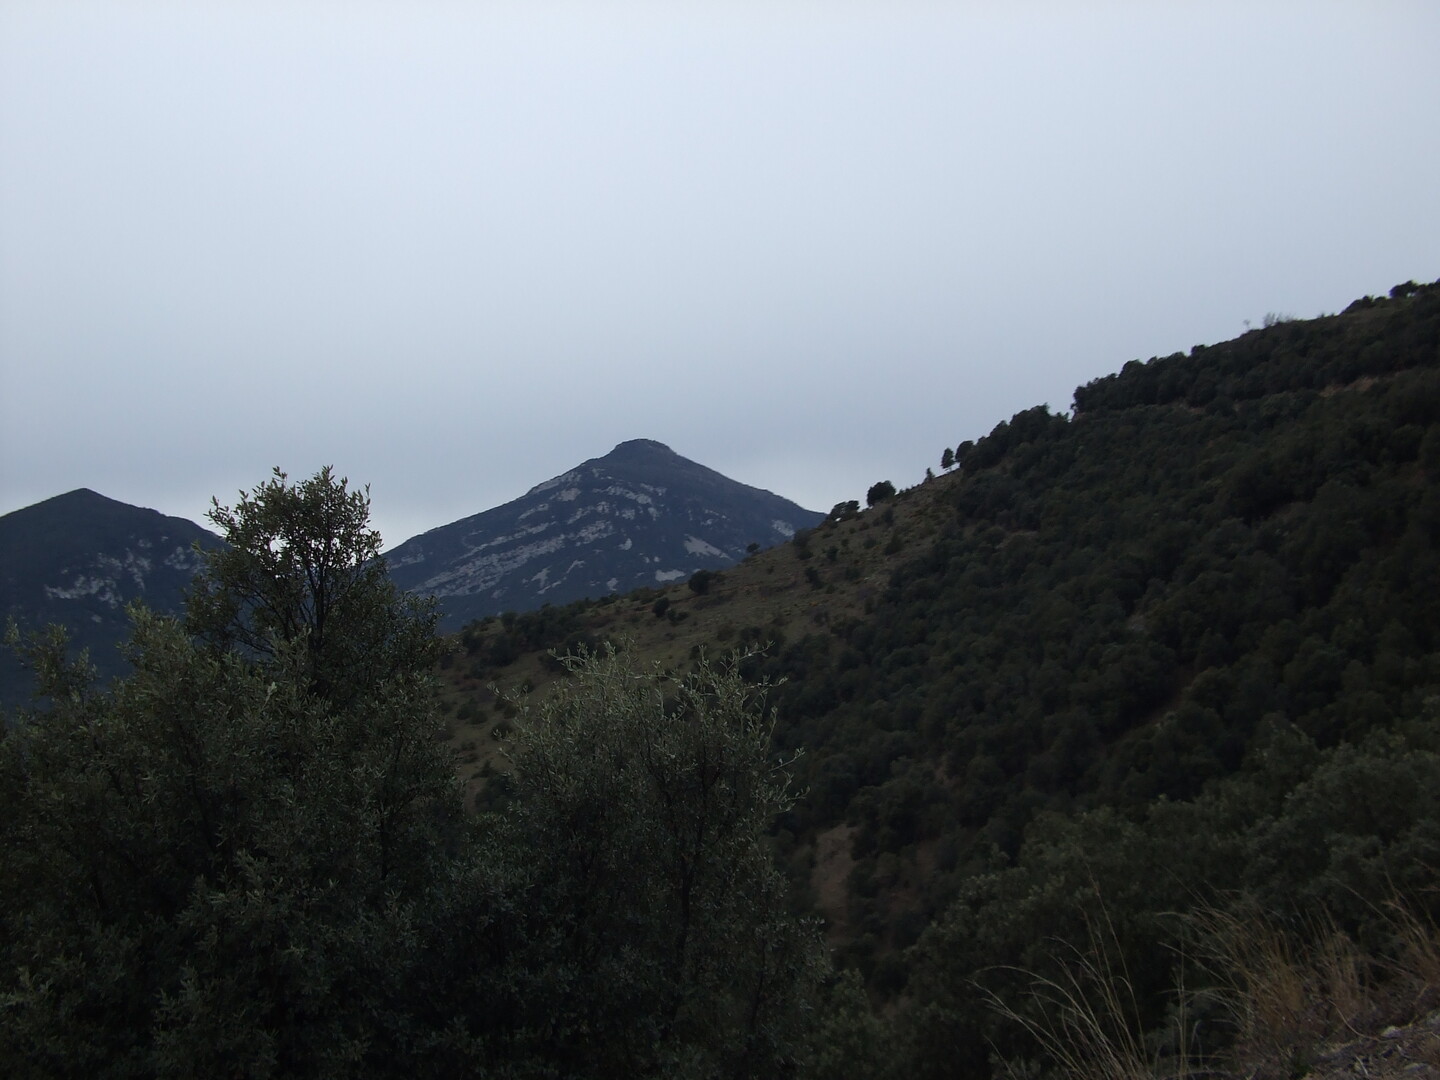 Südanfahrt: Der Berg ist vermutlich der Montmajor.